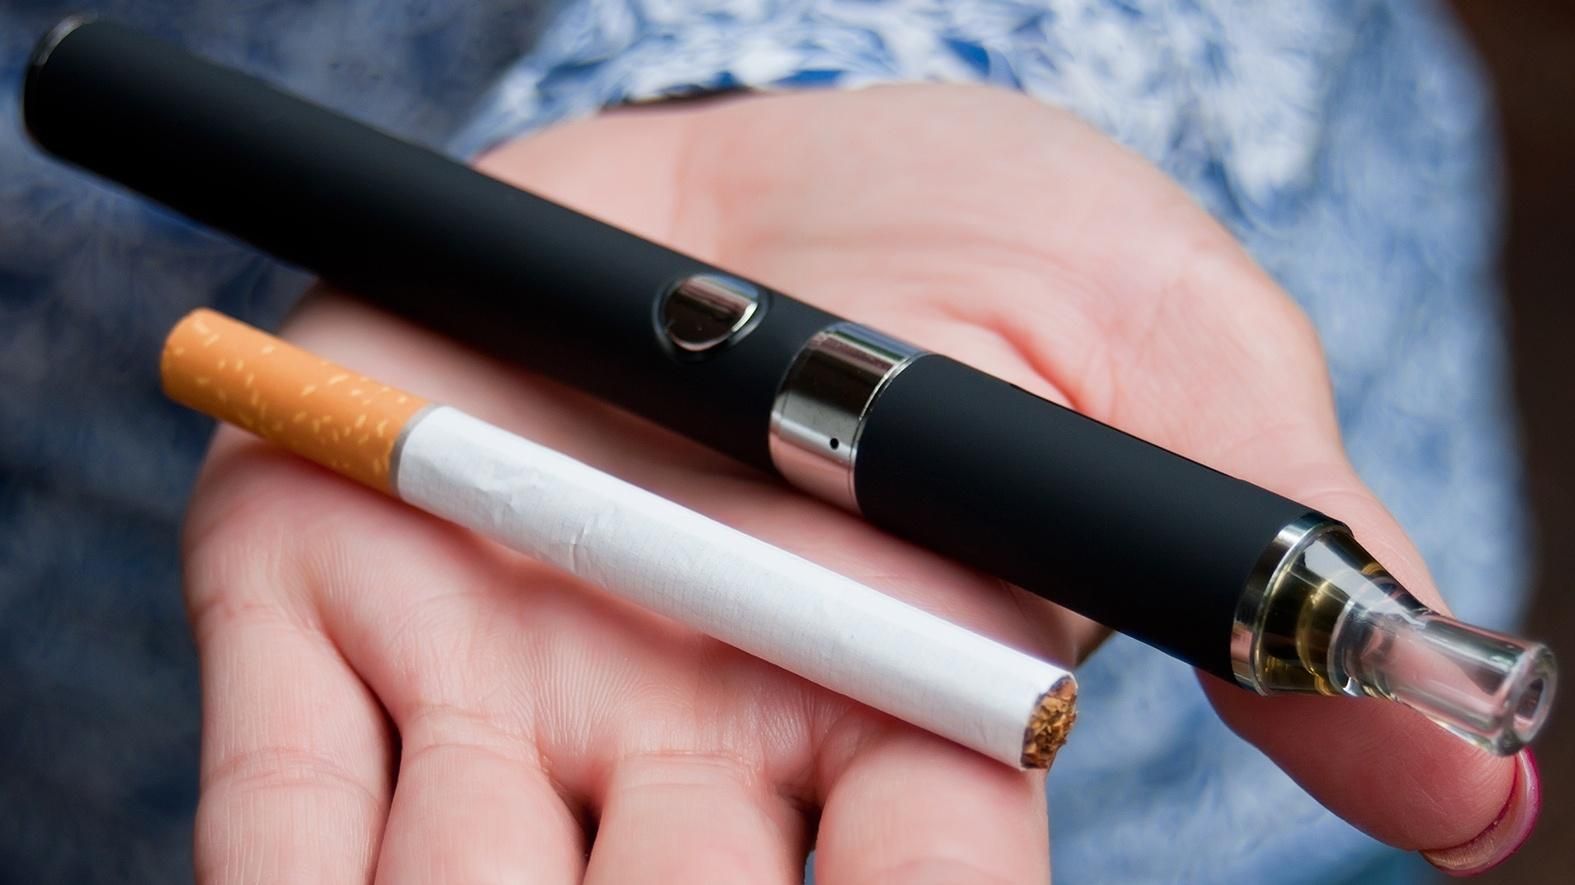 Хуже стандартных: чем опасны ароматизированные э-сигареты